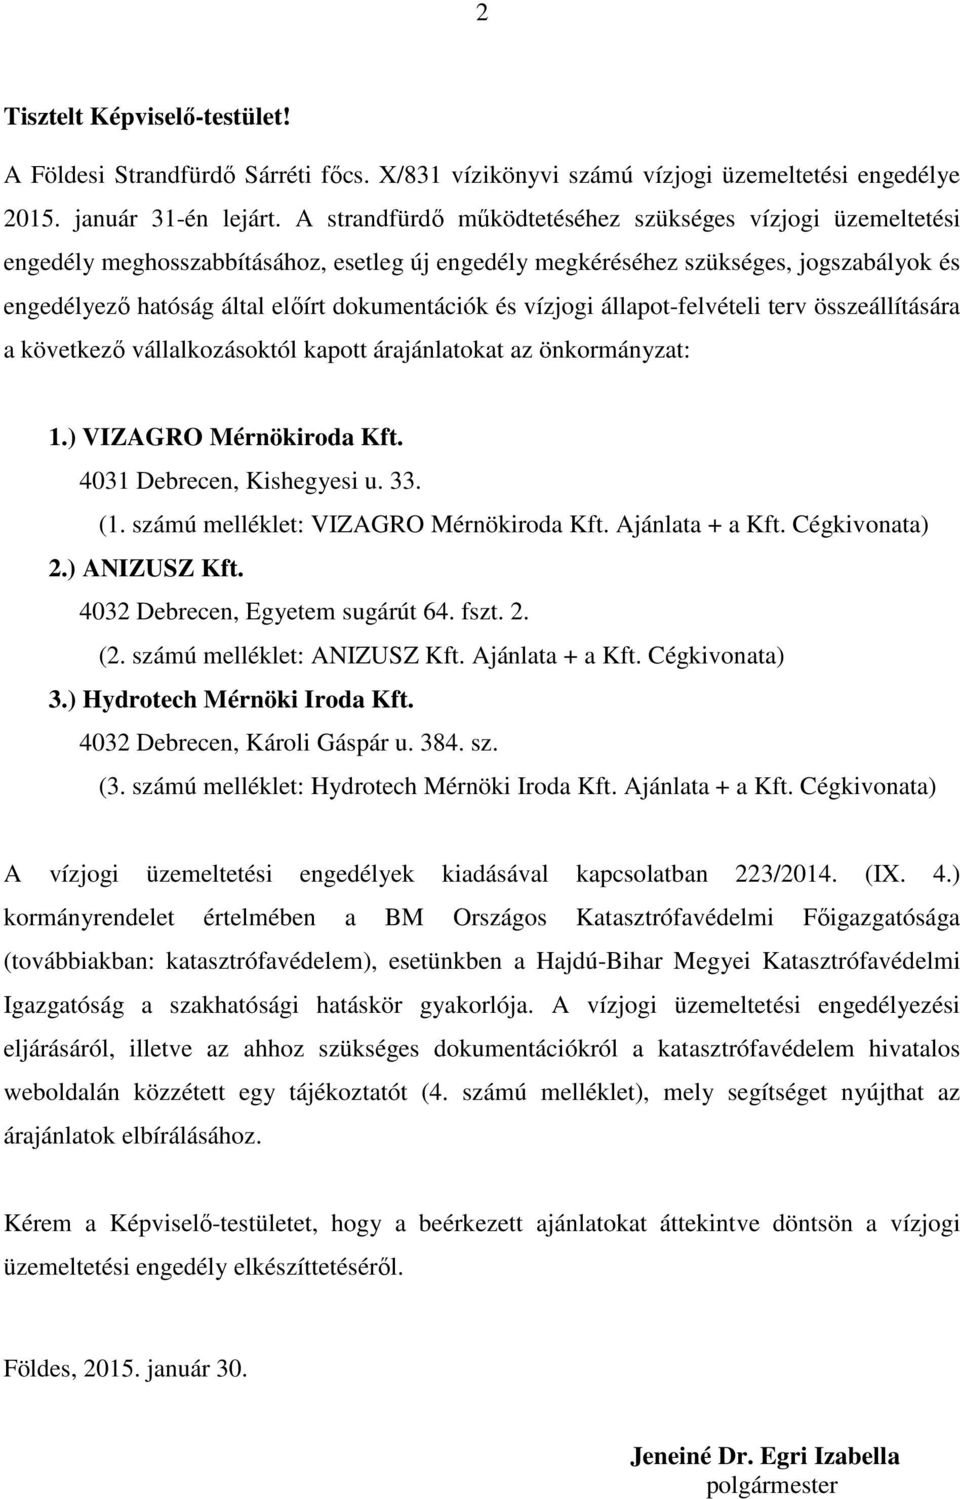 vízjogi állapot-felvételi terv összeállítására a következő vállalkozásoktól kapott árajánlatokat az önkormányzat: 1.) VIZAGRO Mérnökiroda Kft. 4031 Debrecen, Kishegyesi u. 33. (1.